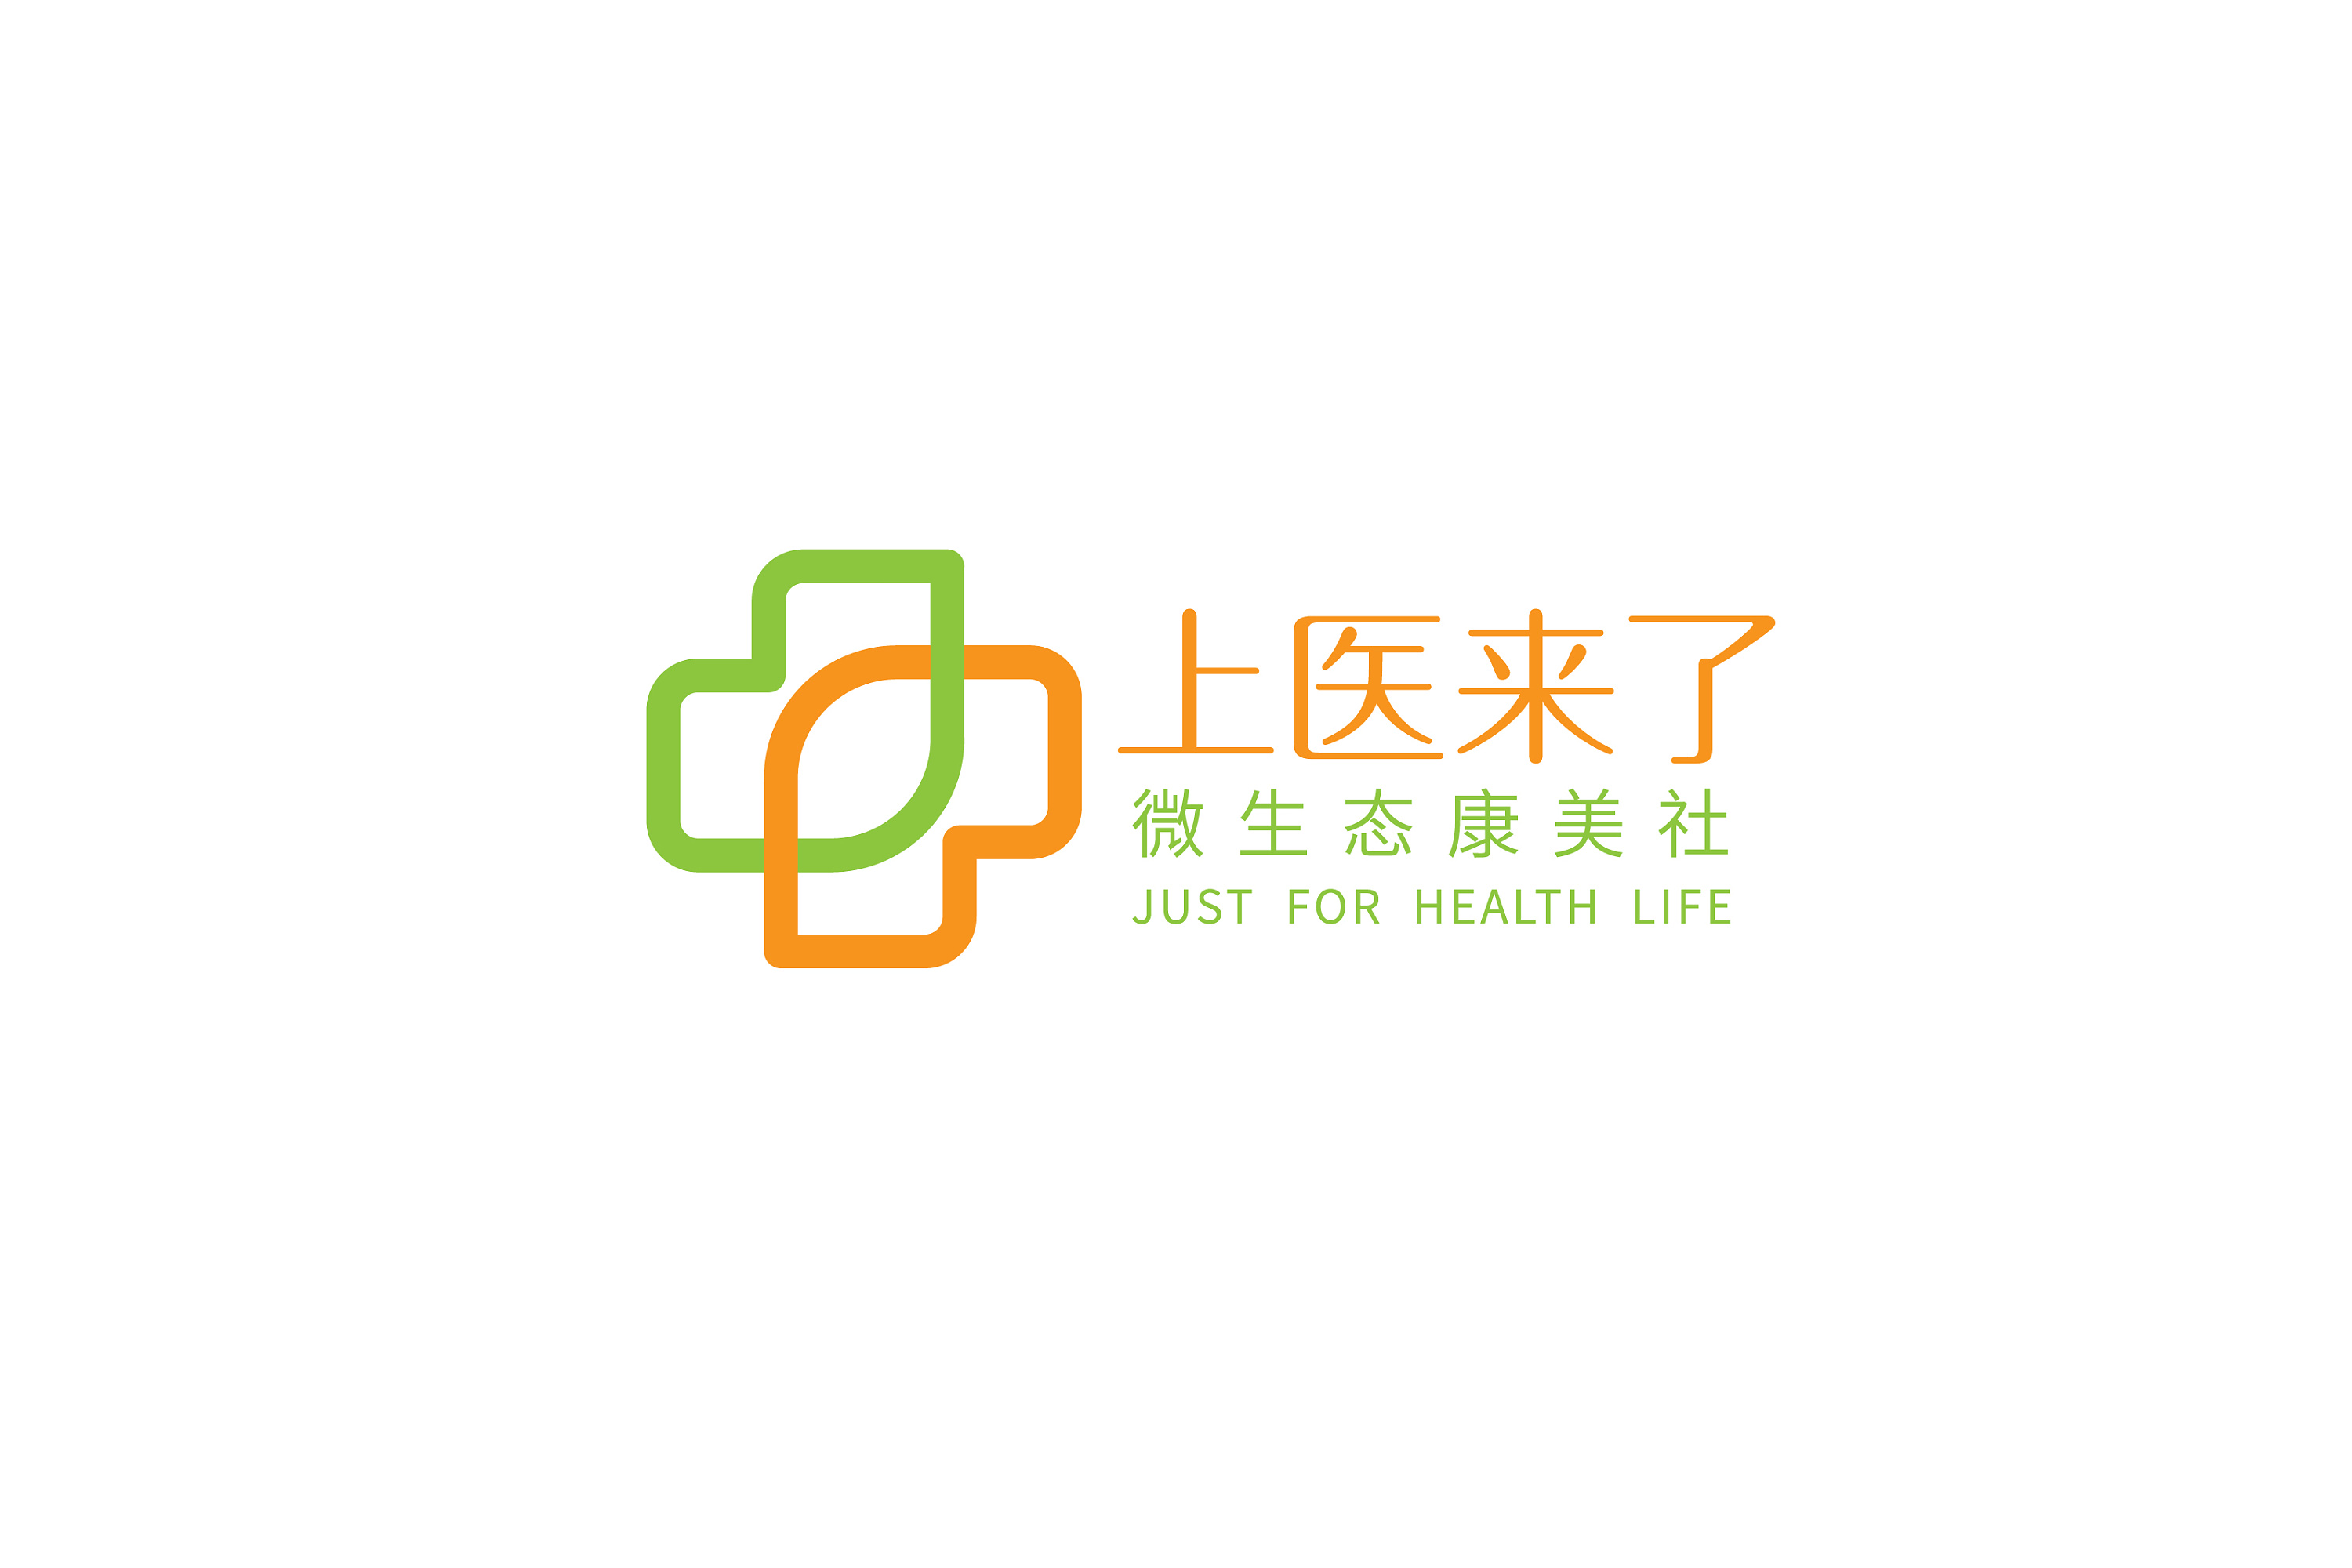 生命健康医院医疗集团公司企业logo标志字体商标设计